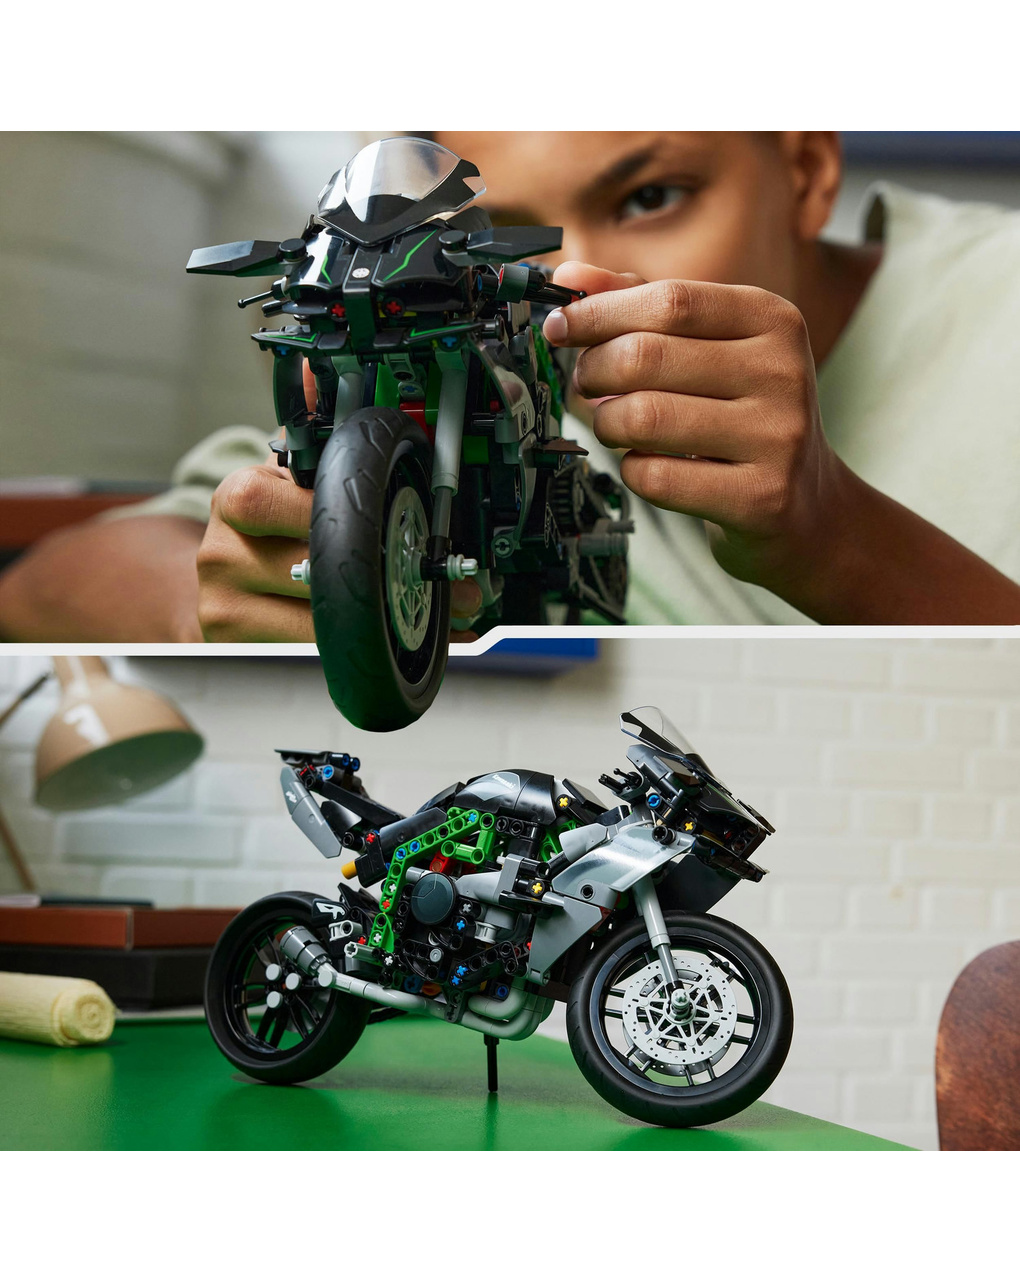 Moto kawasaki ninja h2r - 42170 - lego technic - LEGO